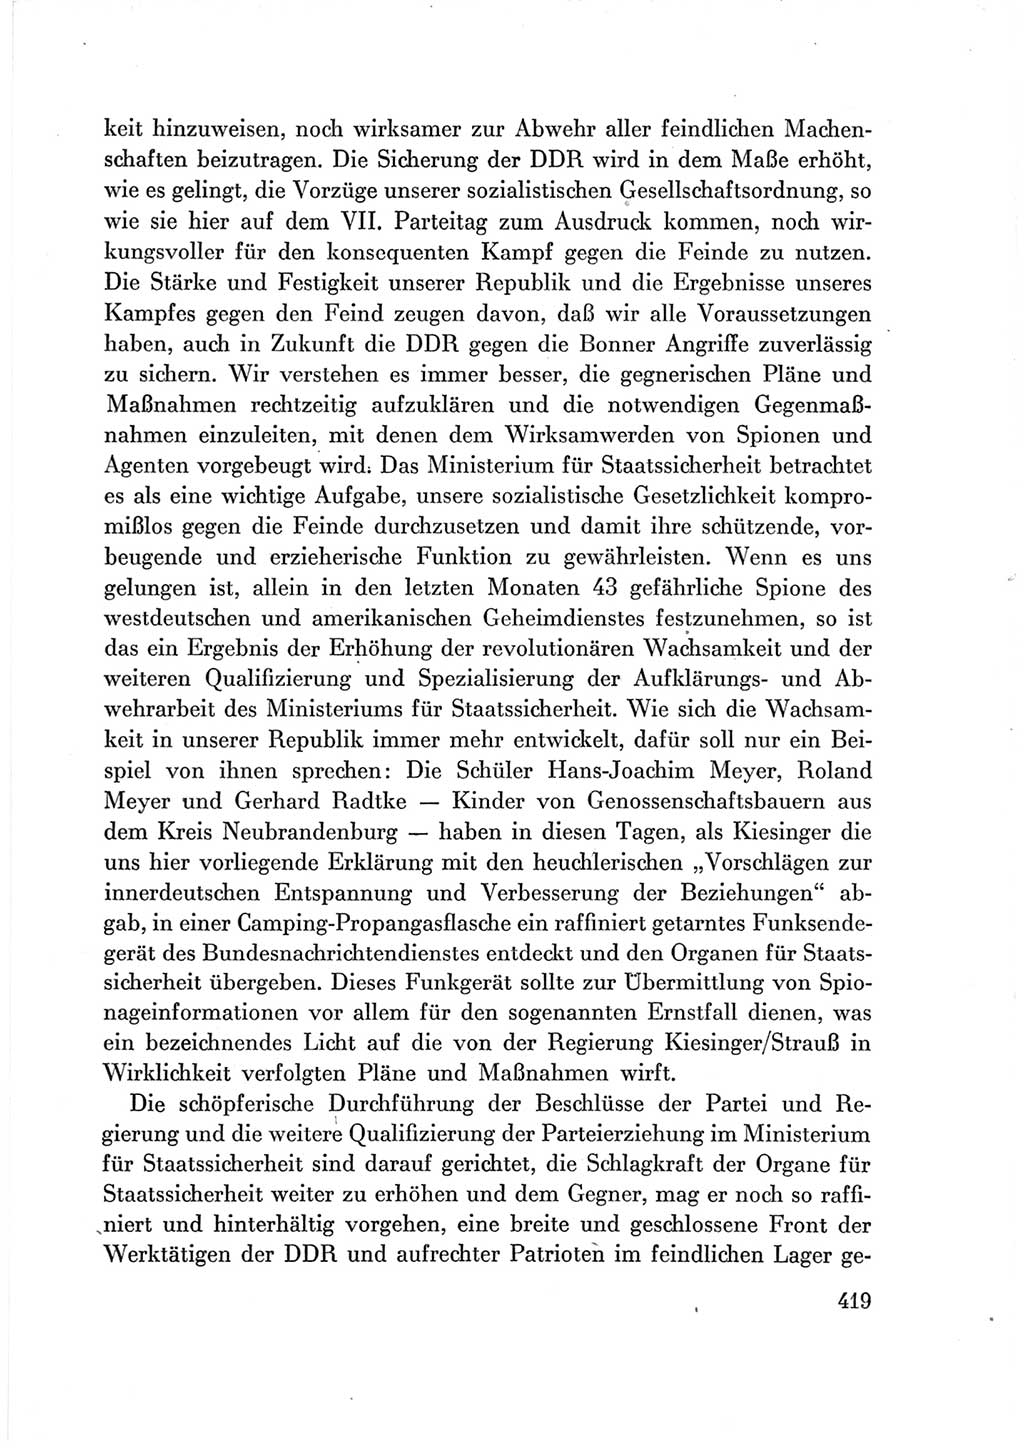 Protokoll der Verhandlungen des Ⅶ. Parteitages der Sozialistischen Einheitspartei Deutschlands (SED) [Deutsche Demokratische Republik (DDR)] 1967, Band Ⅲ, Seite 419 (Prot. Verh. Ⅶ. PT SED DDR 1967, Bd. Ⅲ, S. 419)